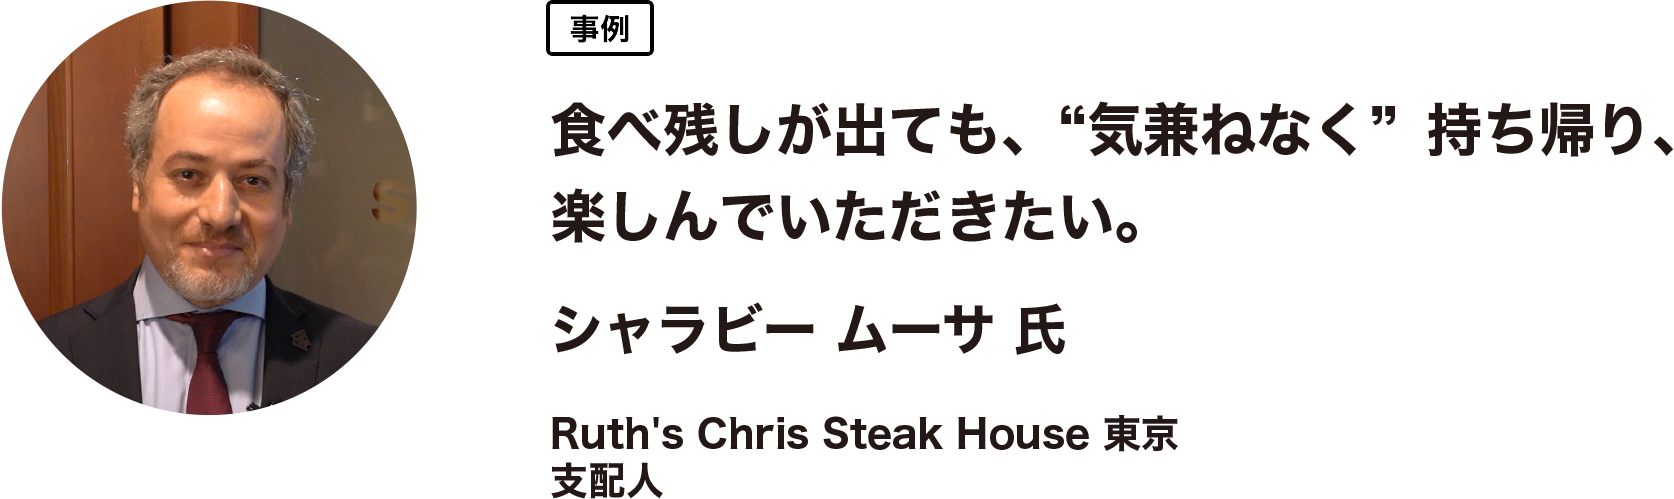 事例　食べ残しが出ても、“気兼ねなく” 持ち帰り、楽しんでいただきたい。 シャラビー ムーサ 氏　Ruth's Chris Steak House 東京 支配人 